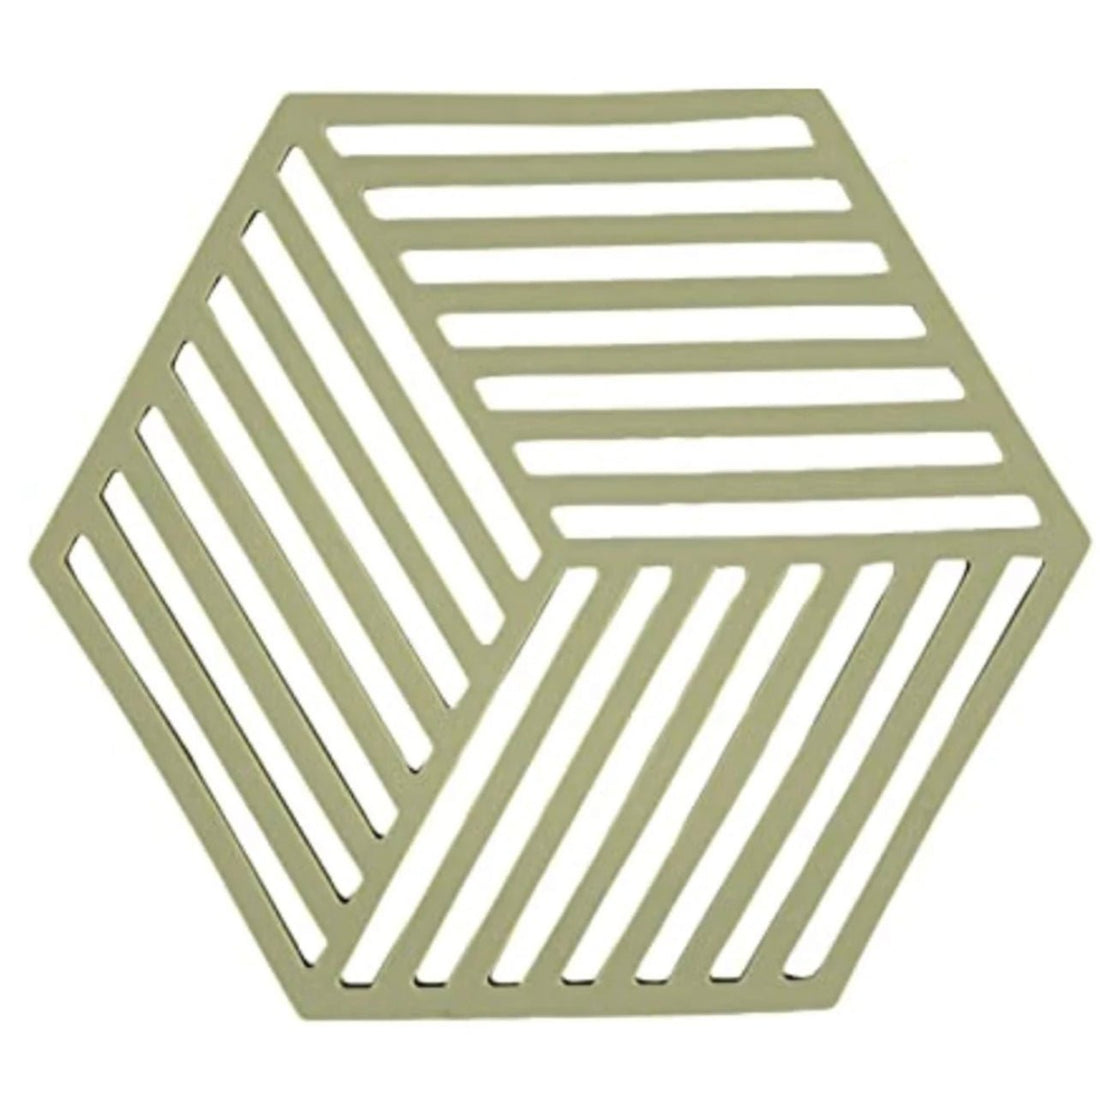 Zone Denmark - Trivet Hexagon - The Flower Crate